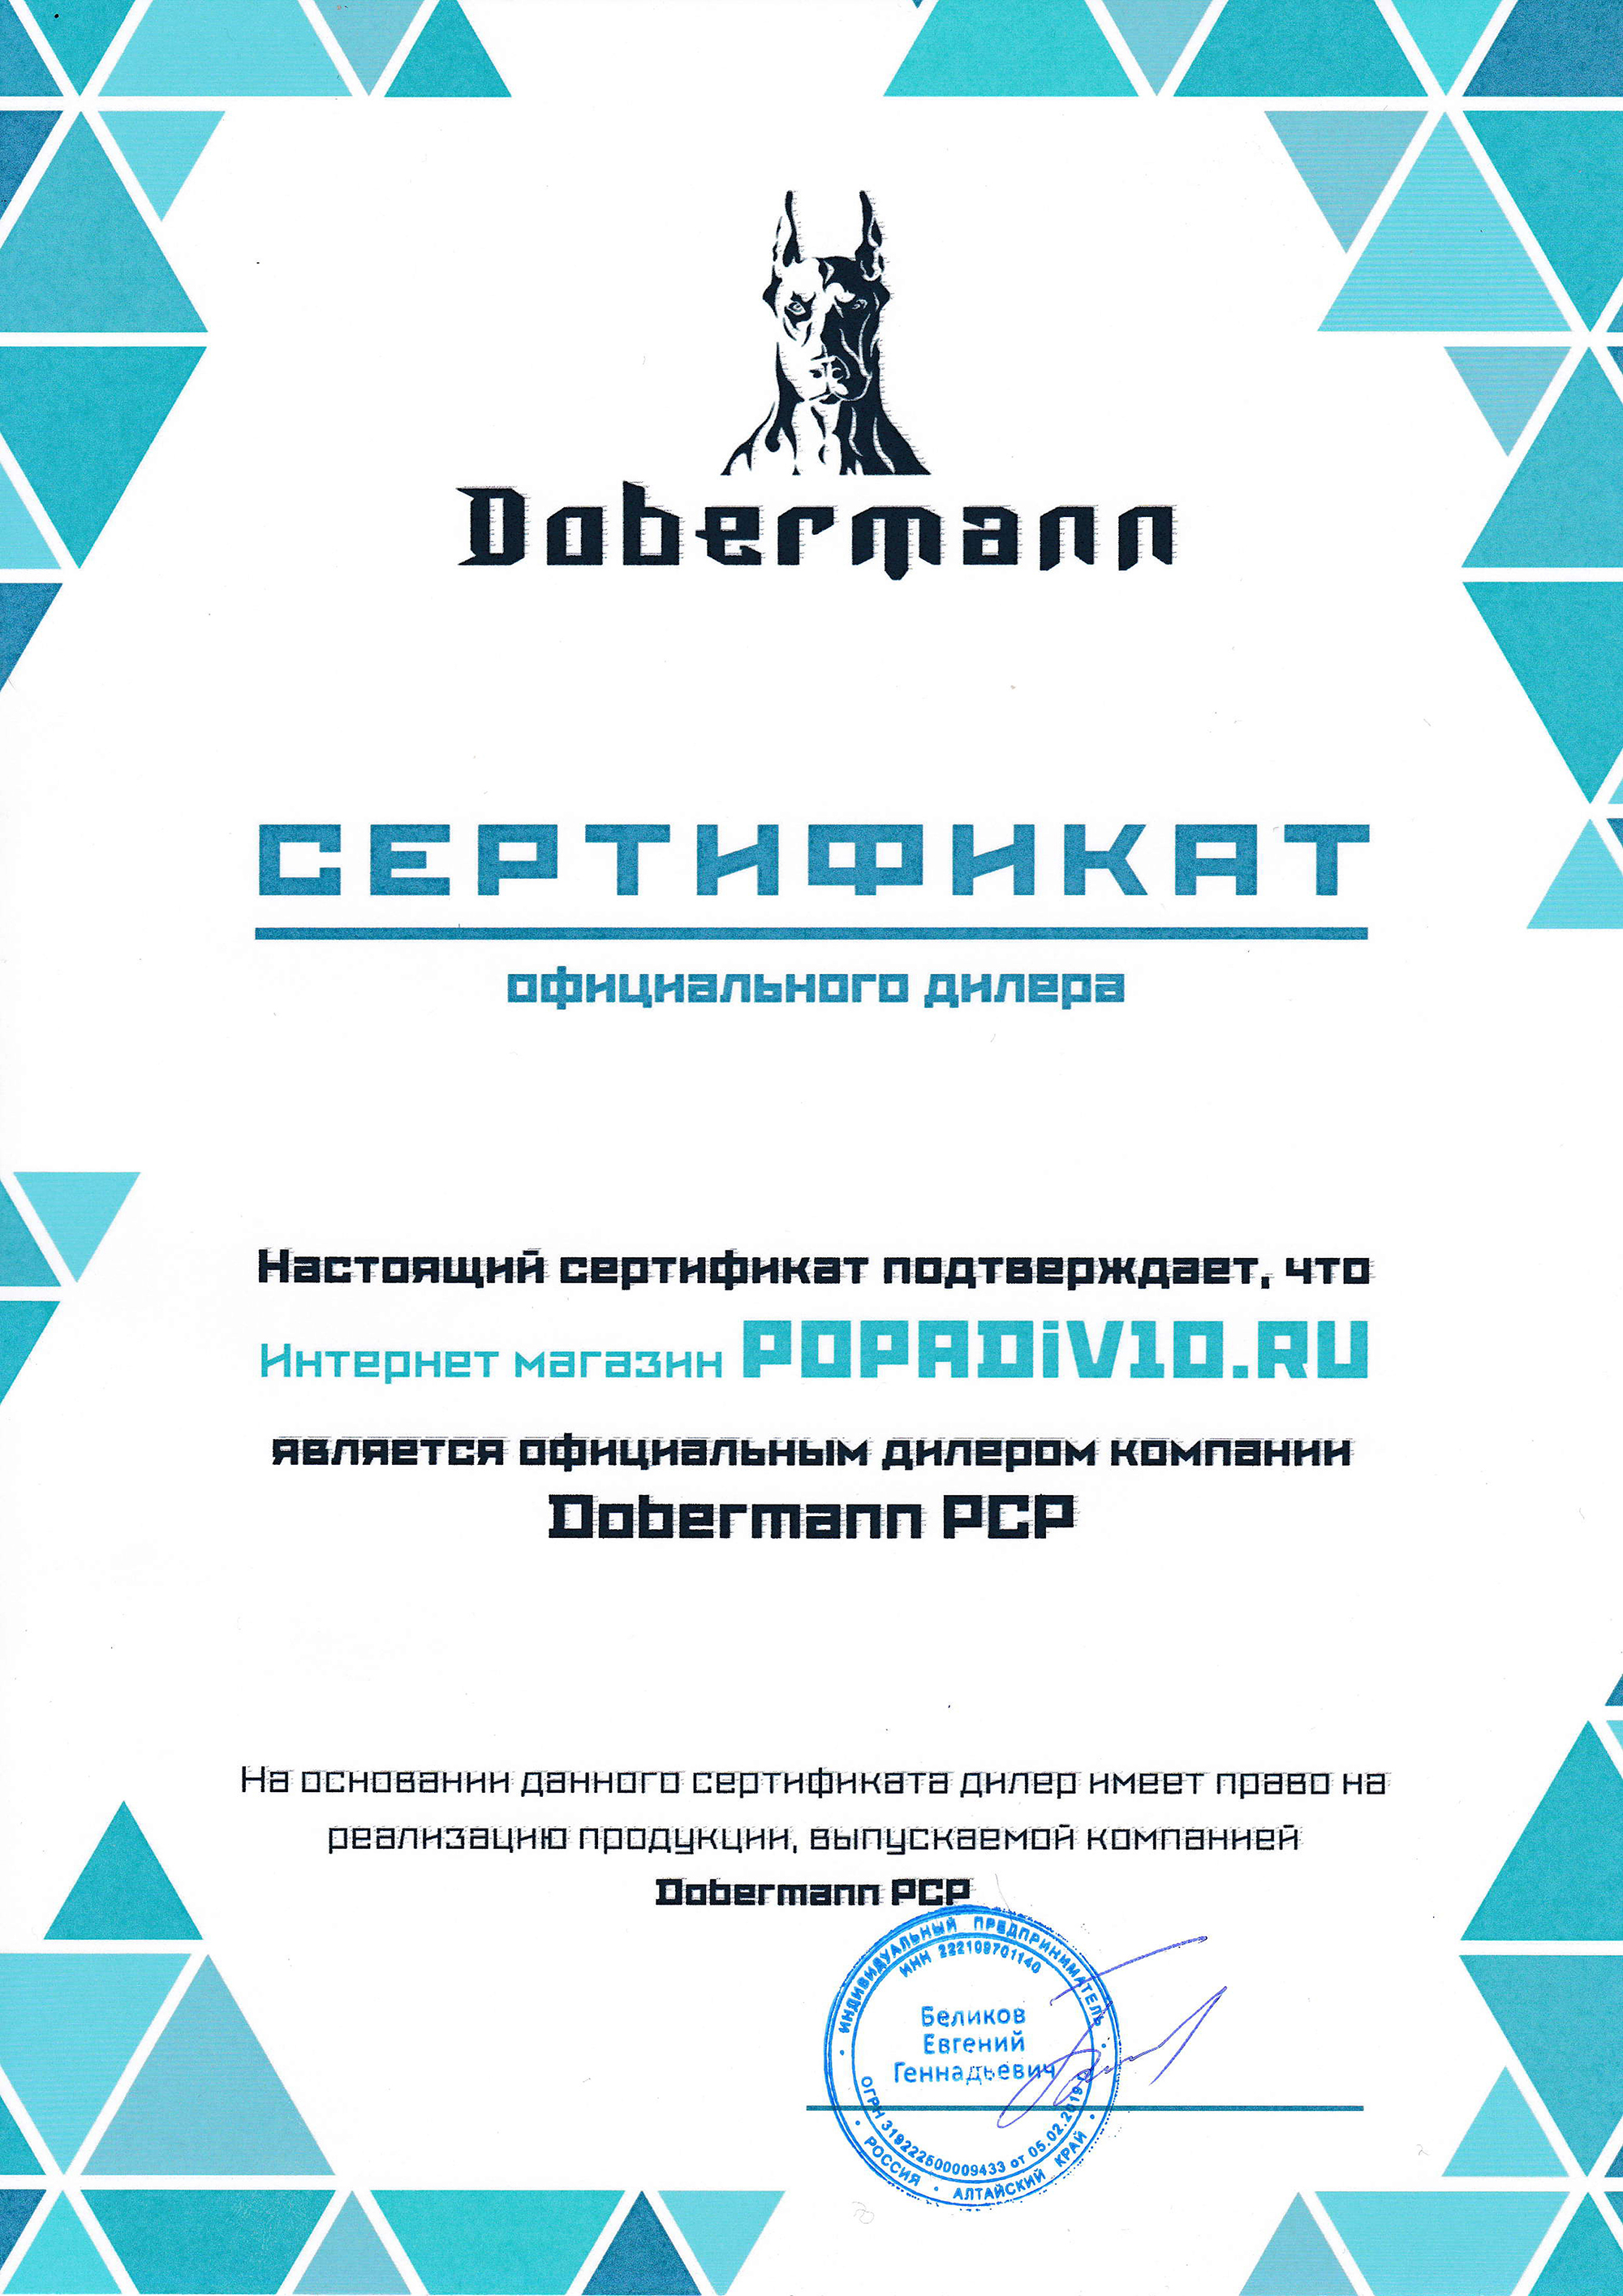 Dobermann - официальный дилер Popadiv10